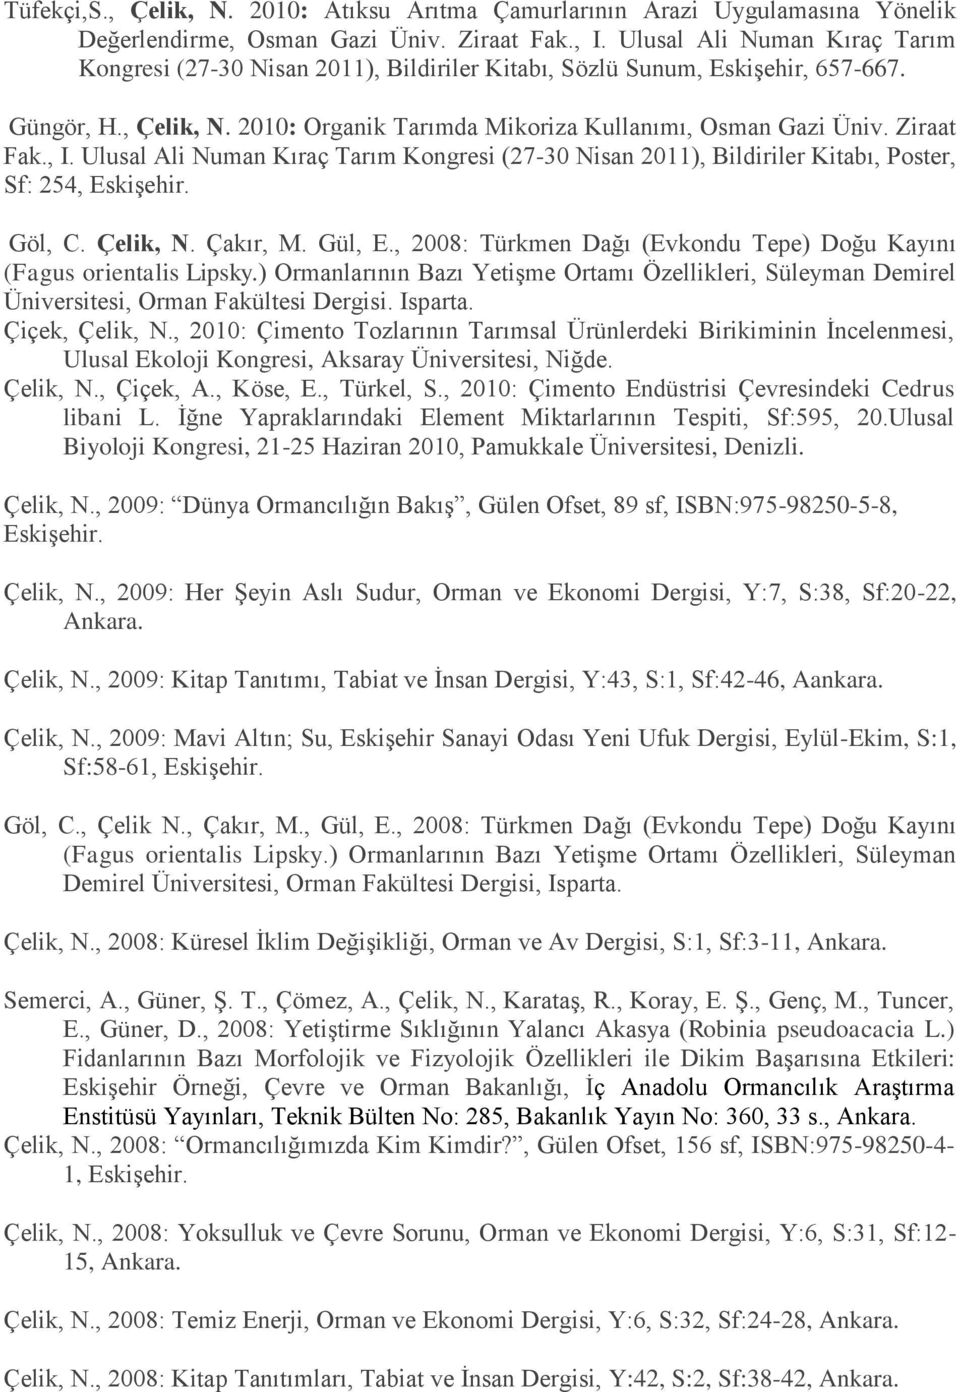 Ziraat Fak., I. Ulusal Ali Numan Kıraç Tarım Kongresi (27-30 Nisan 2011), Bildiriler Kitabı, Poster, Sf: 254, Göl, C. Çelik, N. Çakır, M. Gül, E.